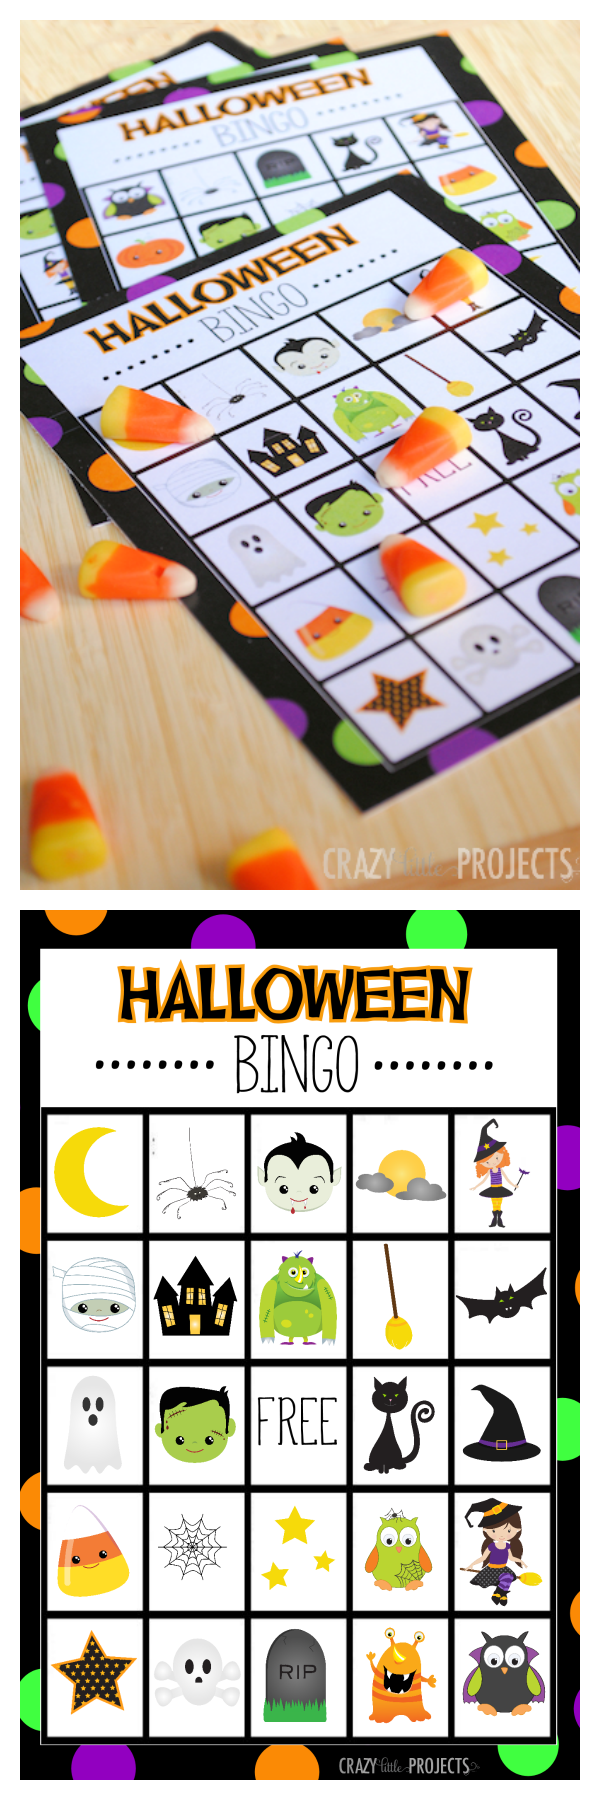 Halloween Bingo Cute Free Printable Game Fun Squared